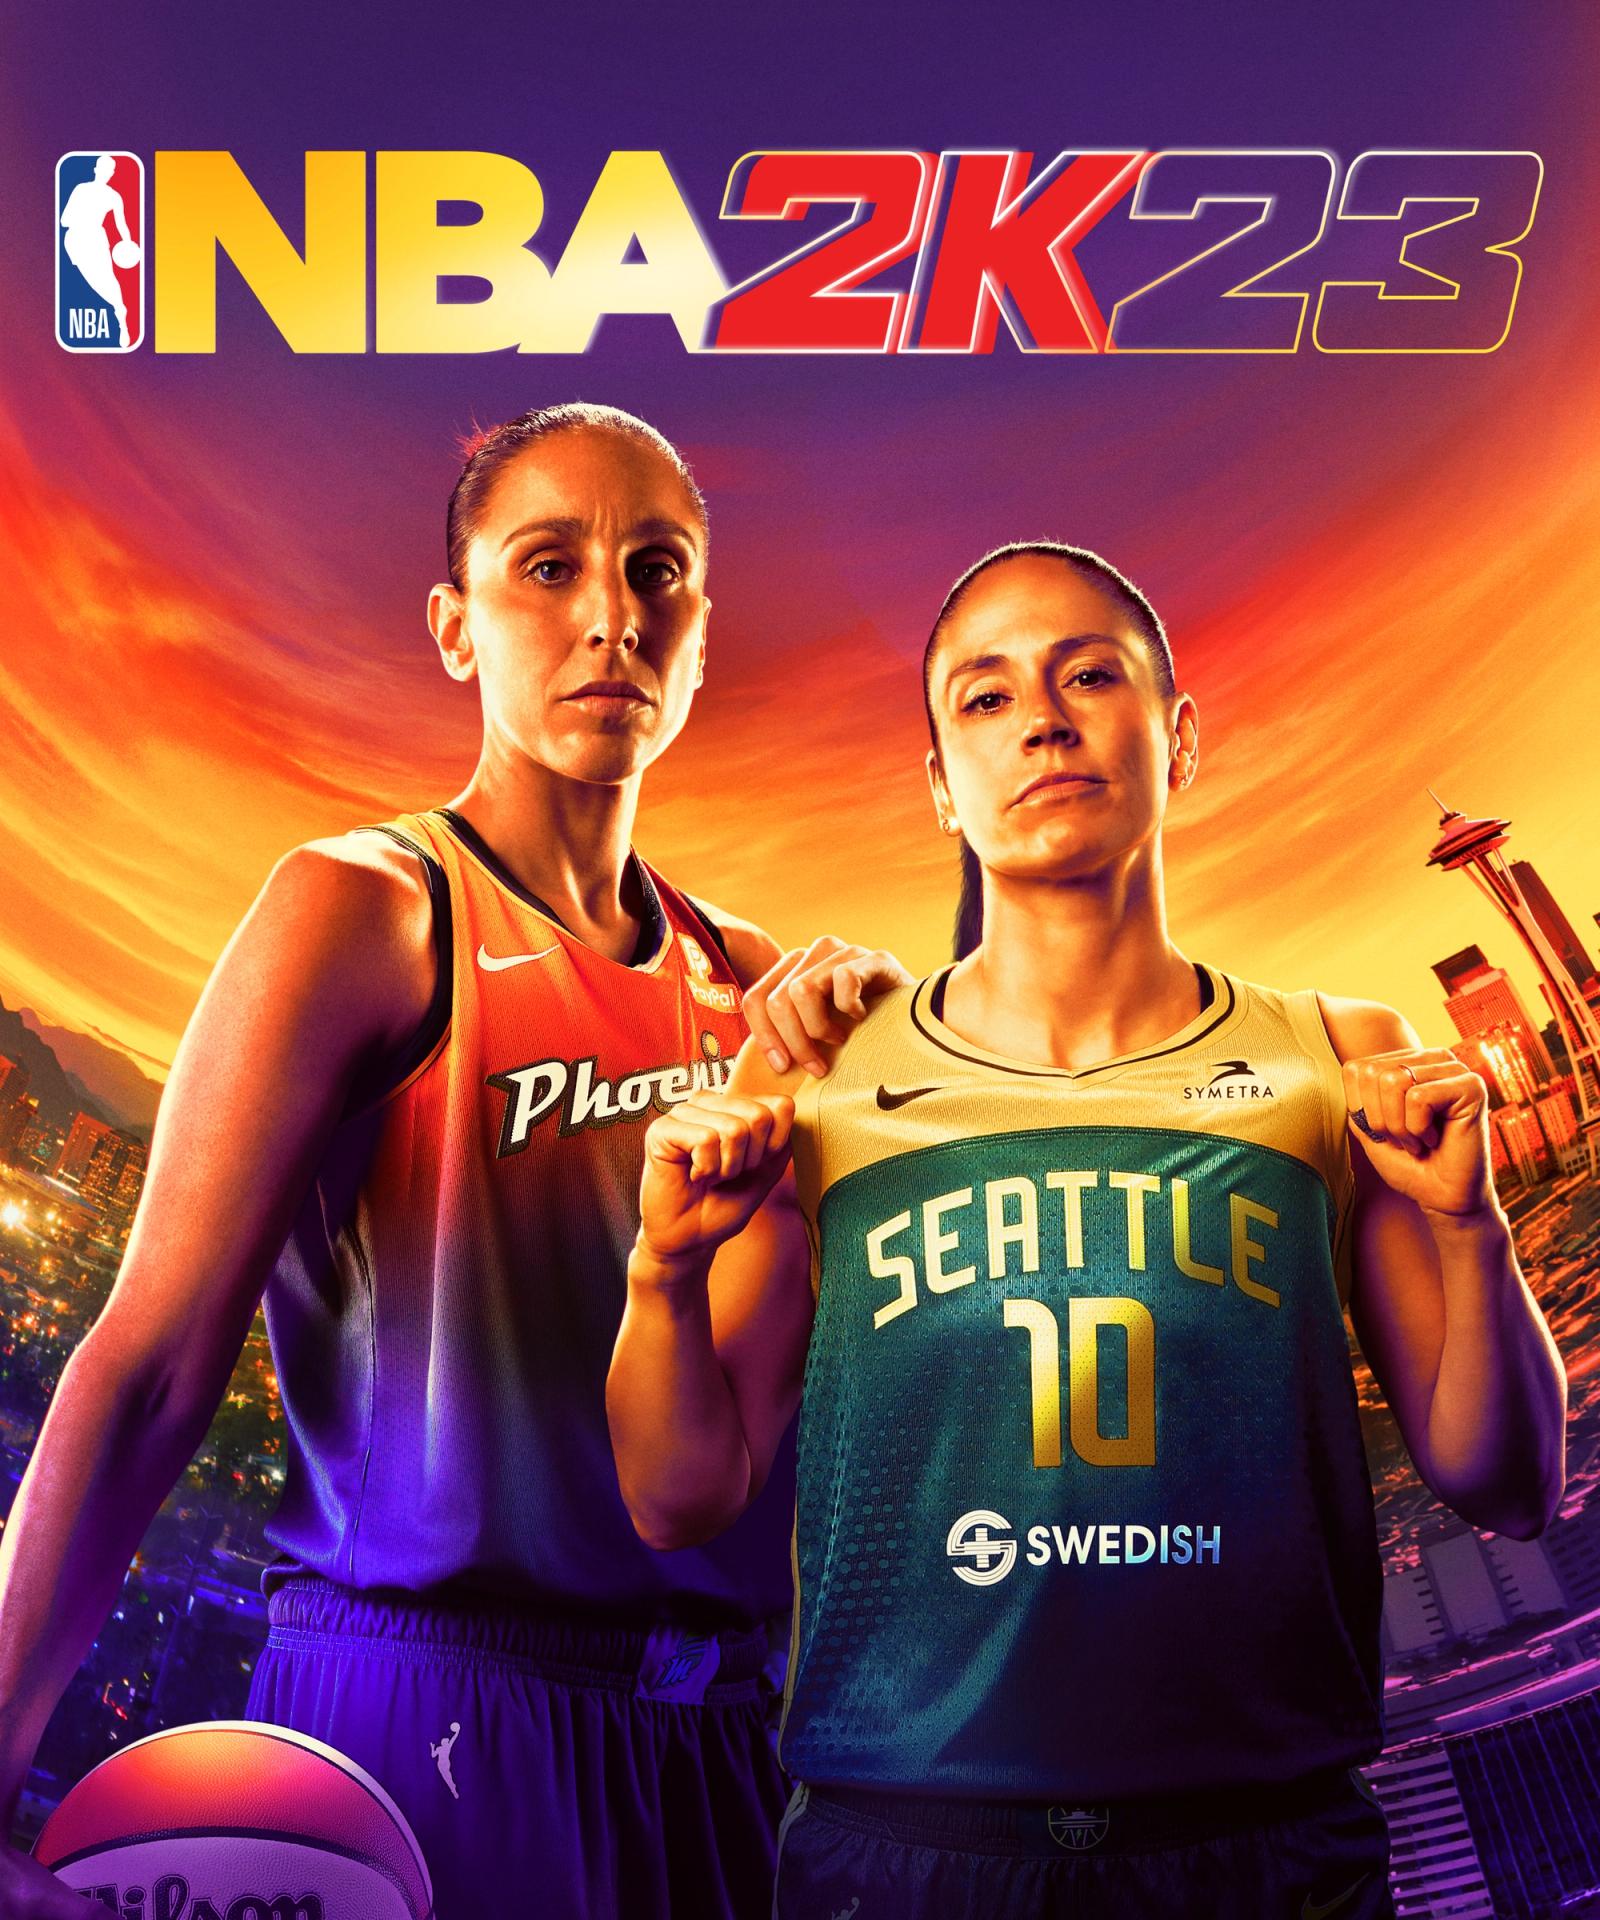 NBA 2K23 content